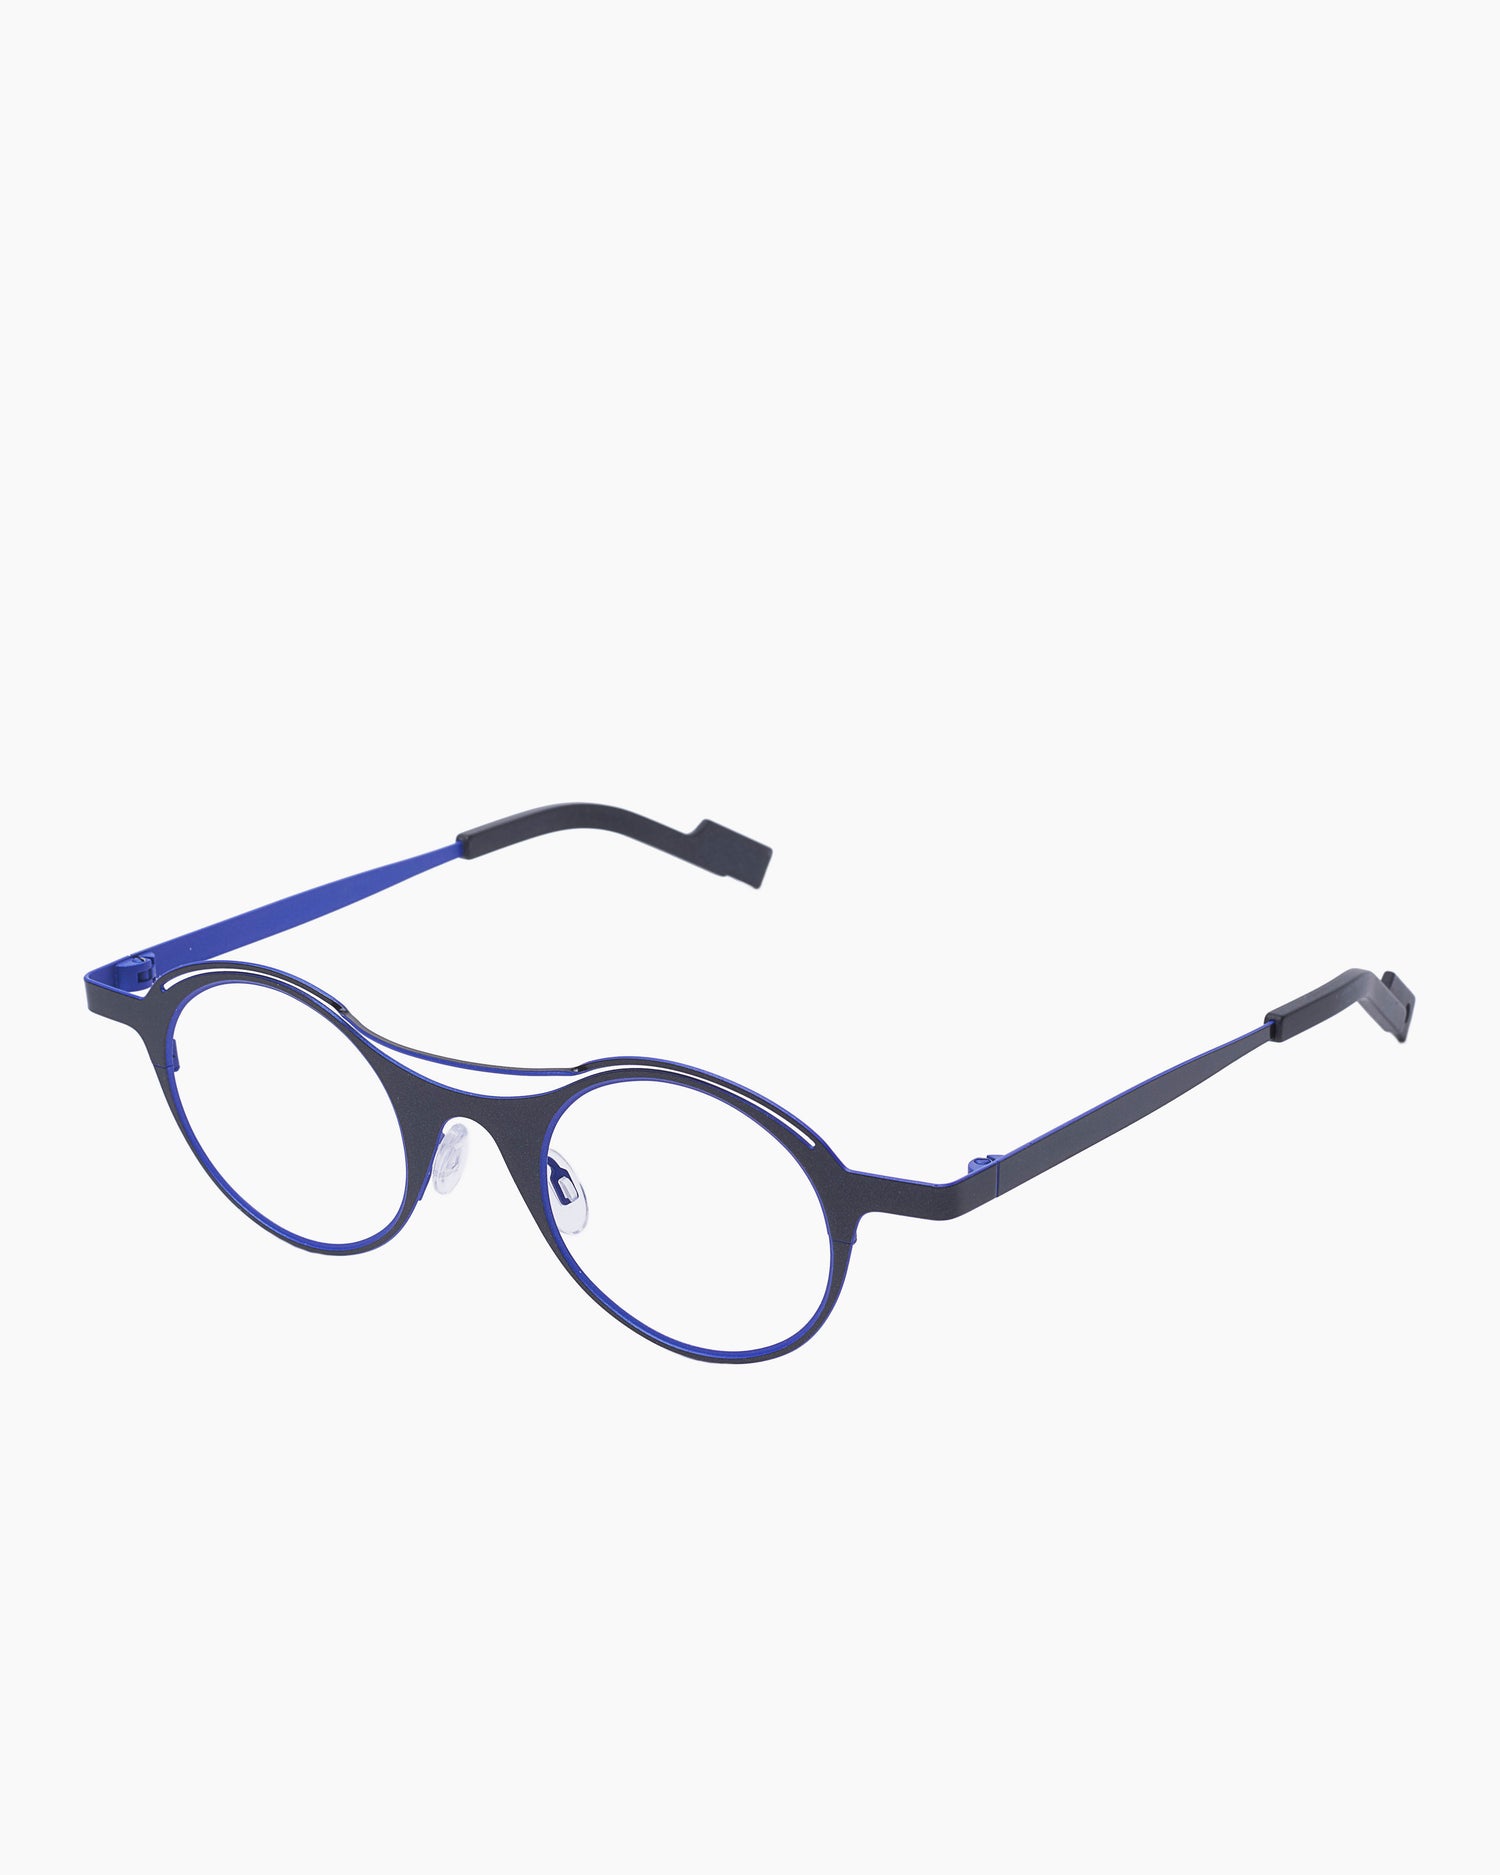 Theo - Cut - 462 | Bar à lunettes:  Marie-Sophie Dion